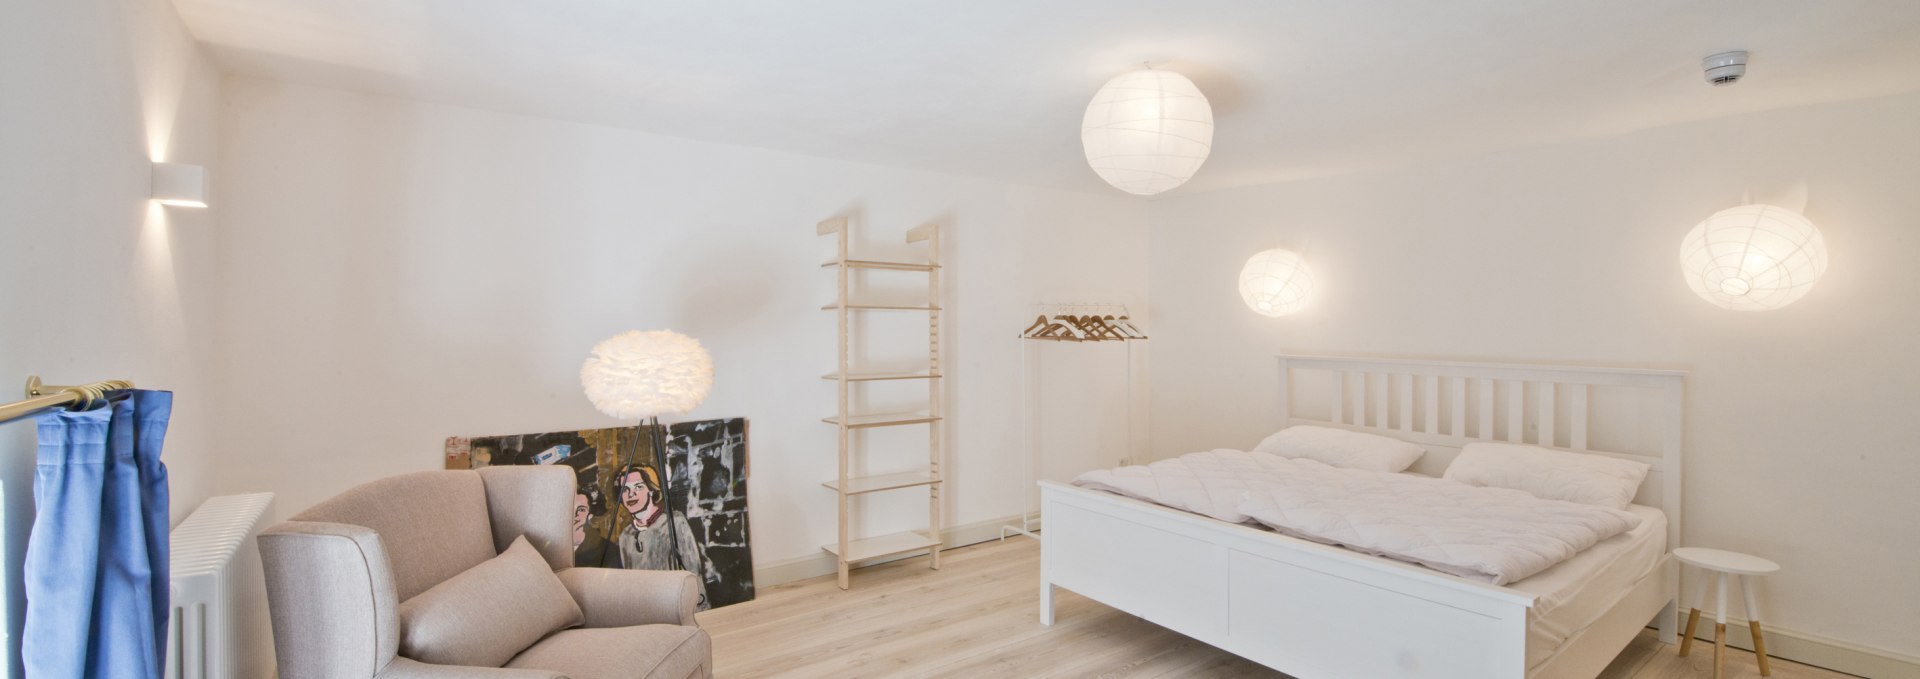 Bedroom in apartment Denmark in Retzow Castle, © DOMUSImages